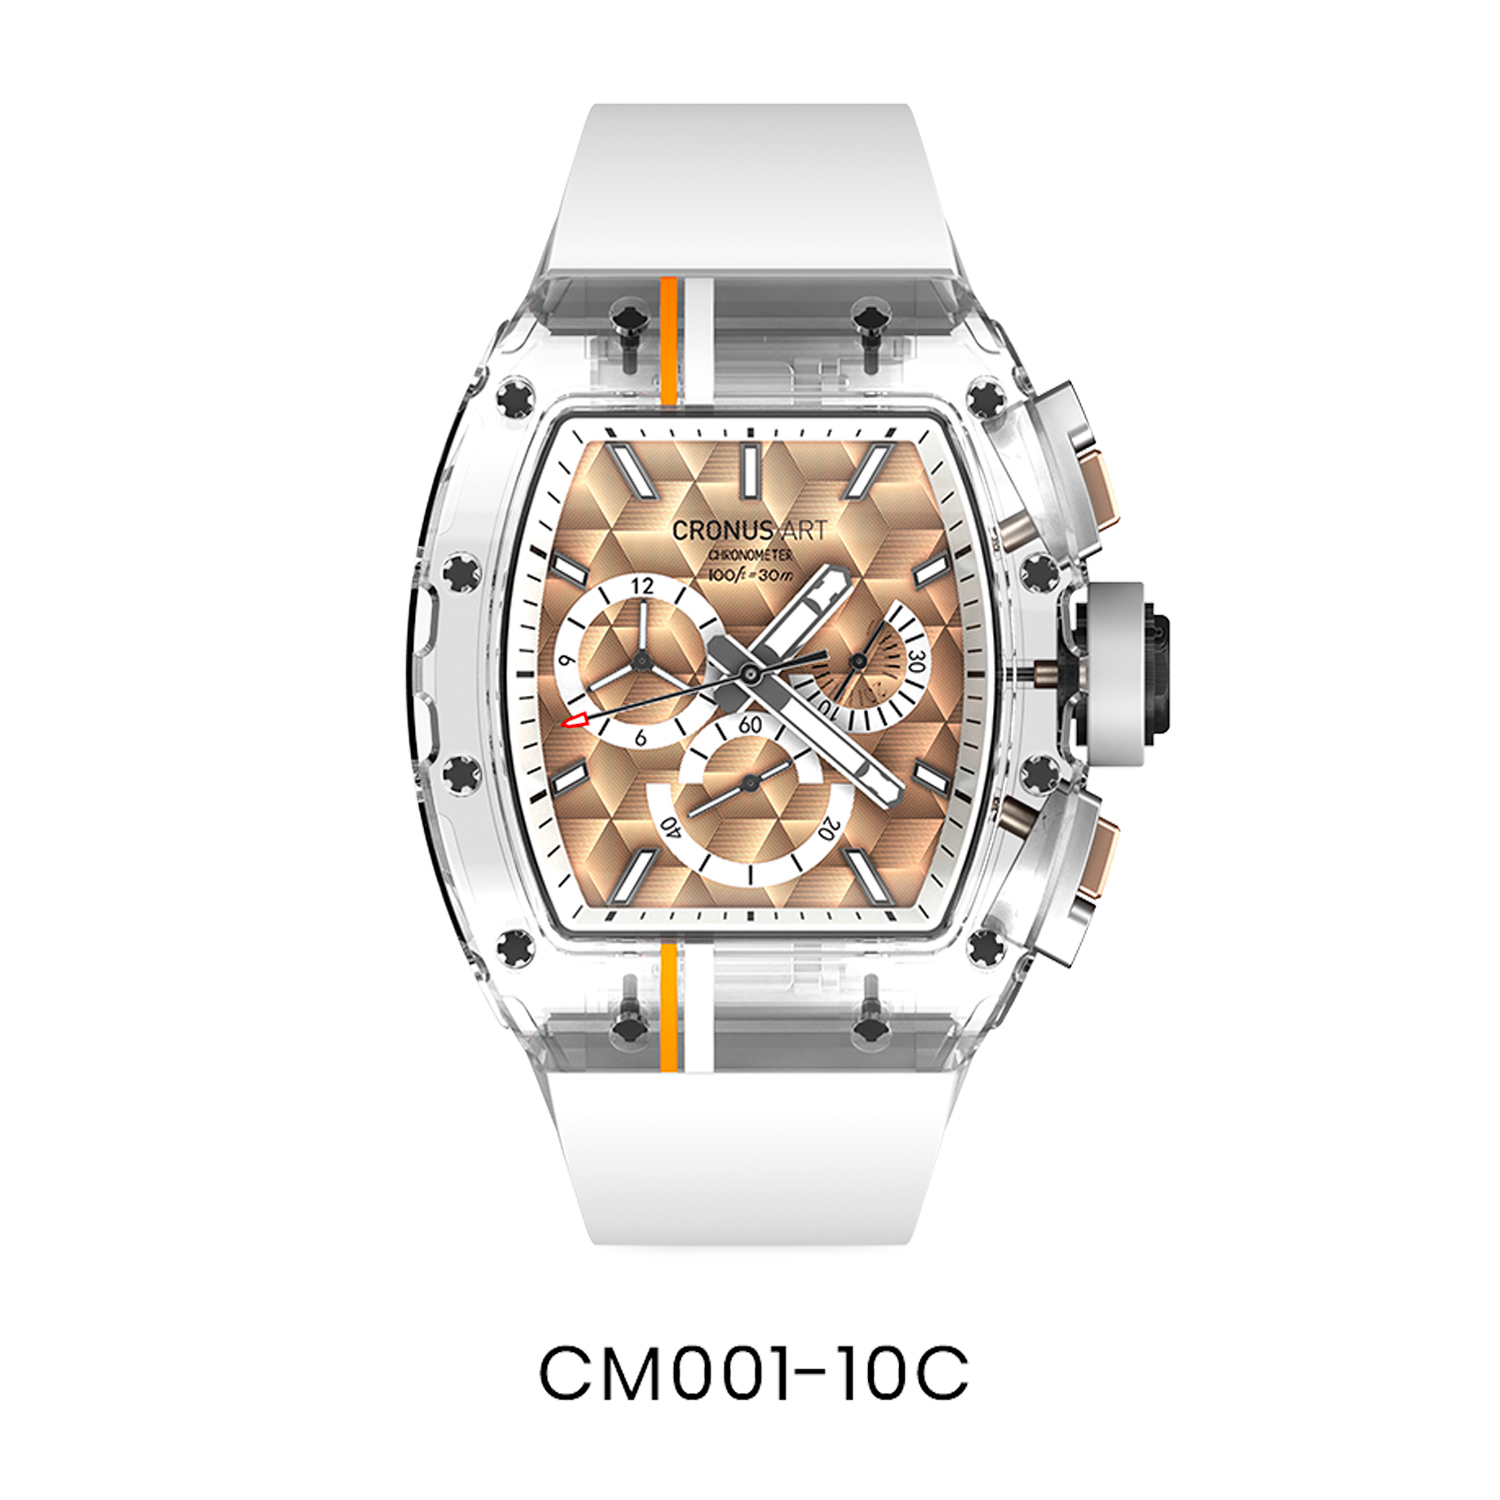 CM001-10C